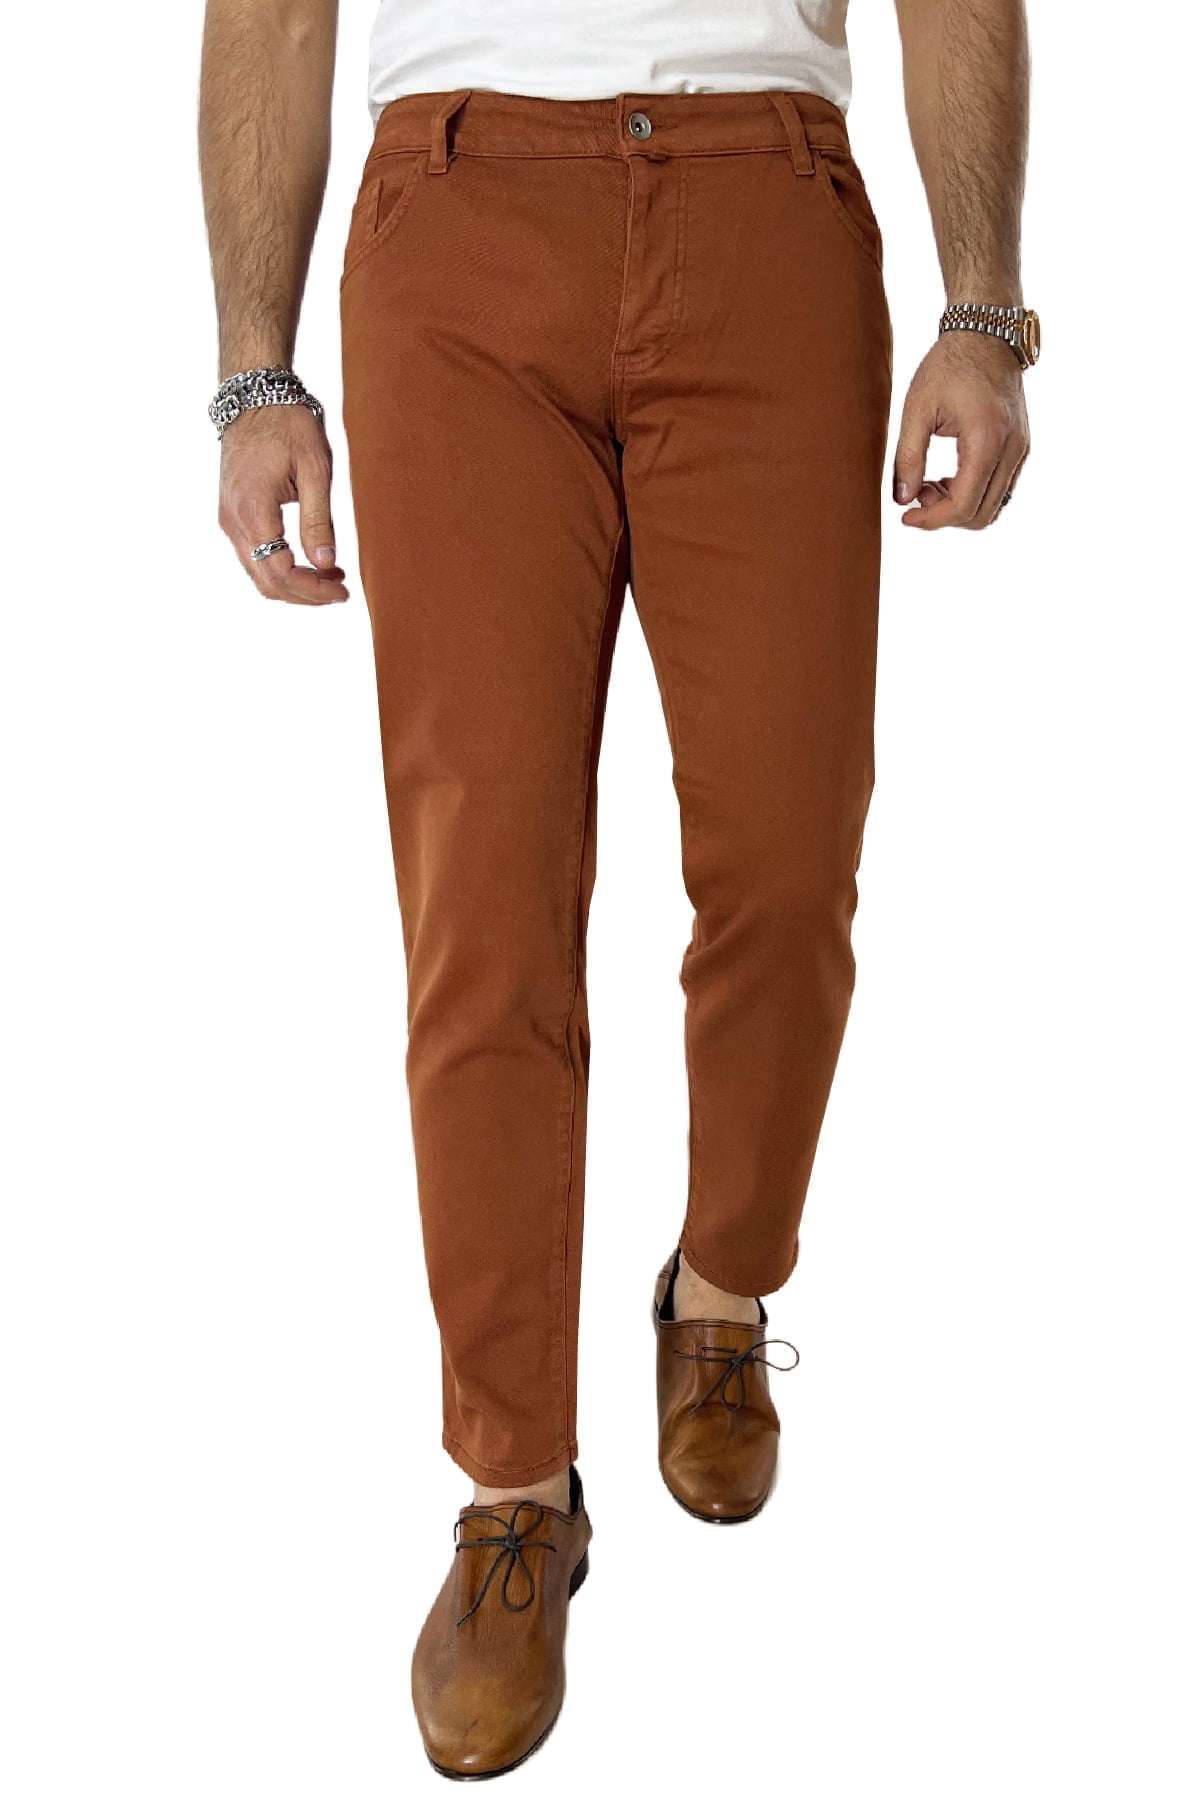 Jeans uomo arancio tinta unita modello 5 tasche slim fit estivo made in italy